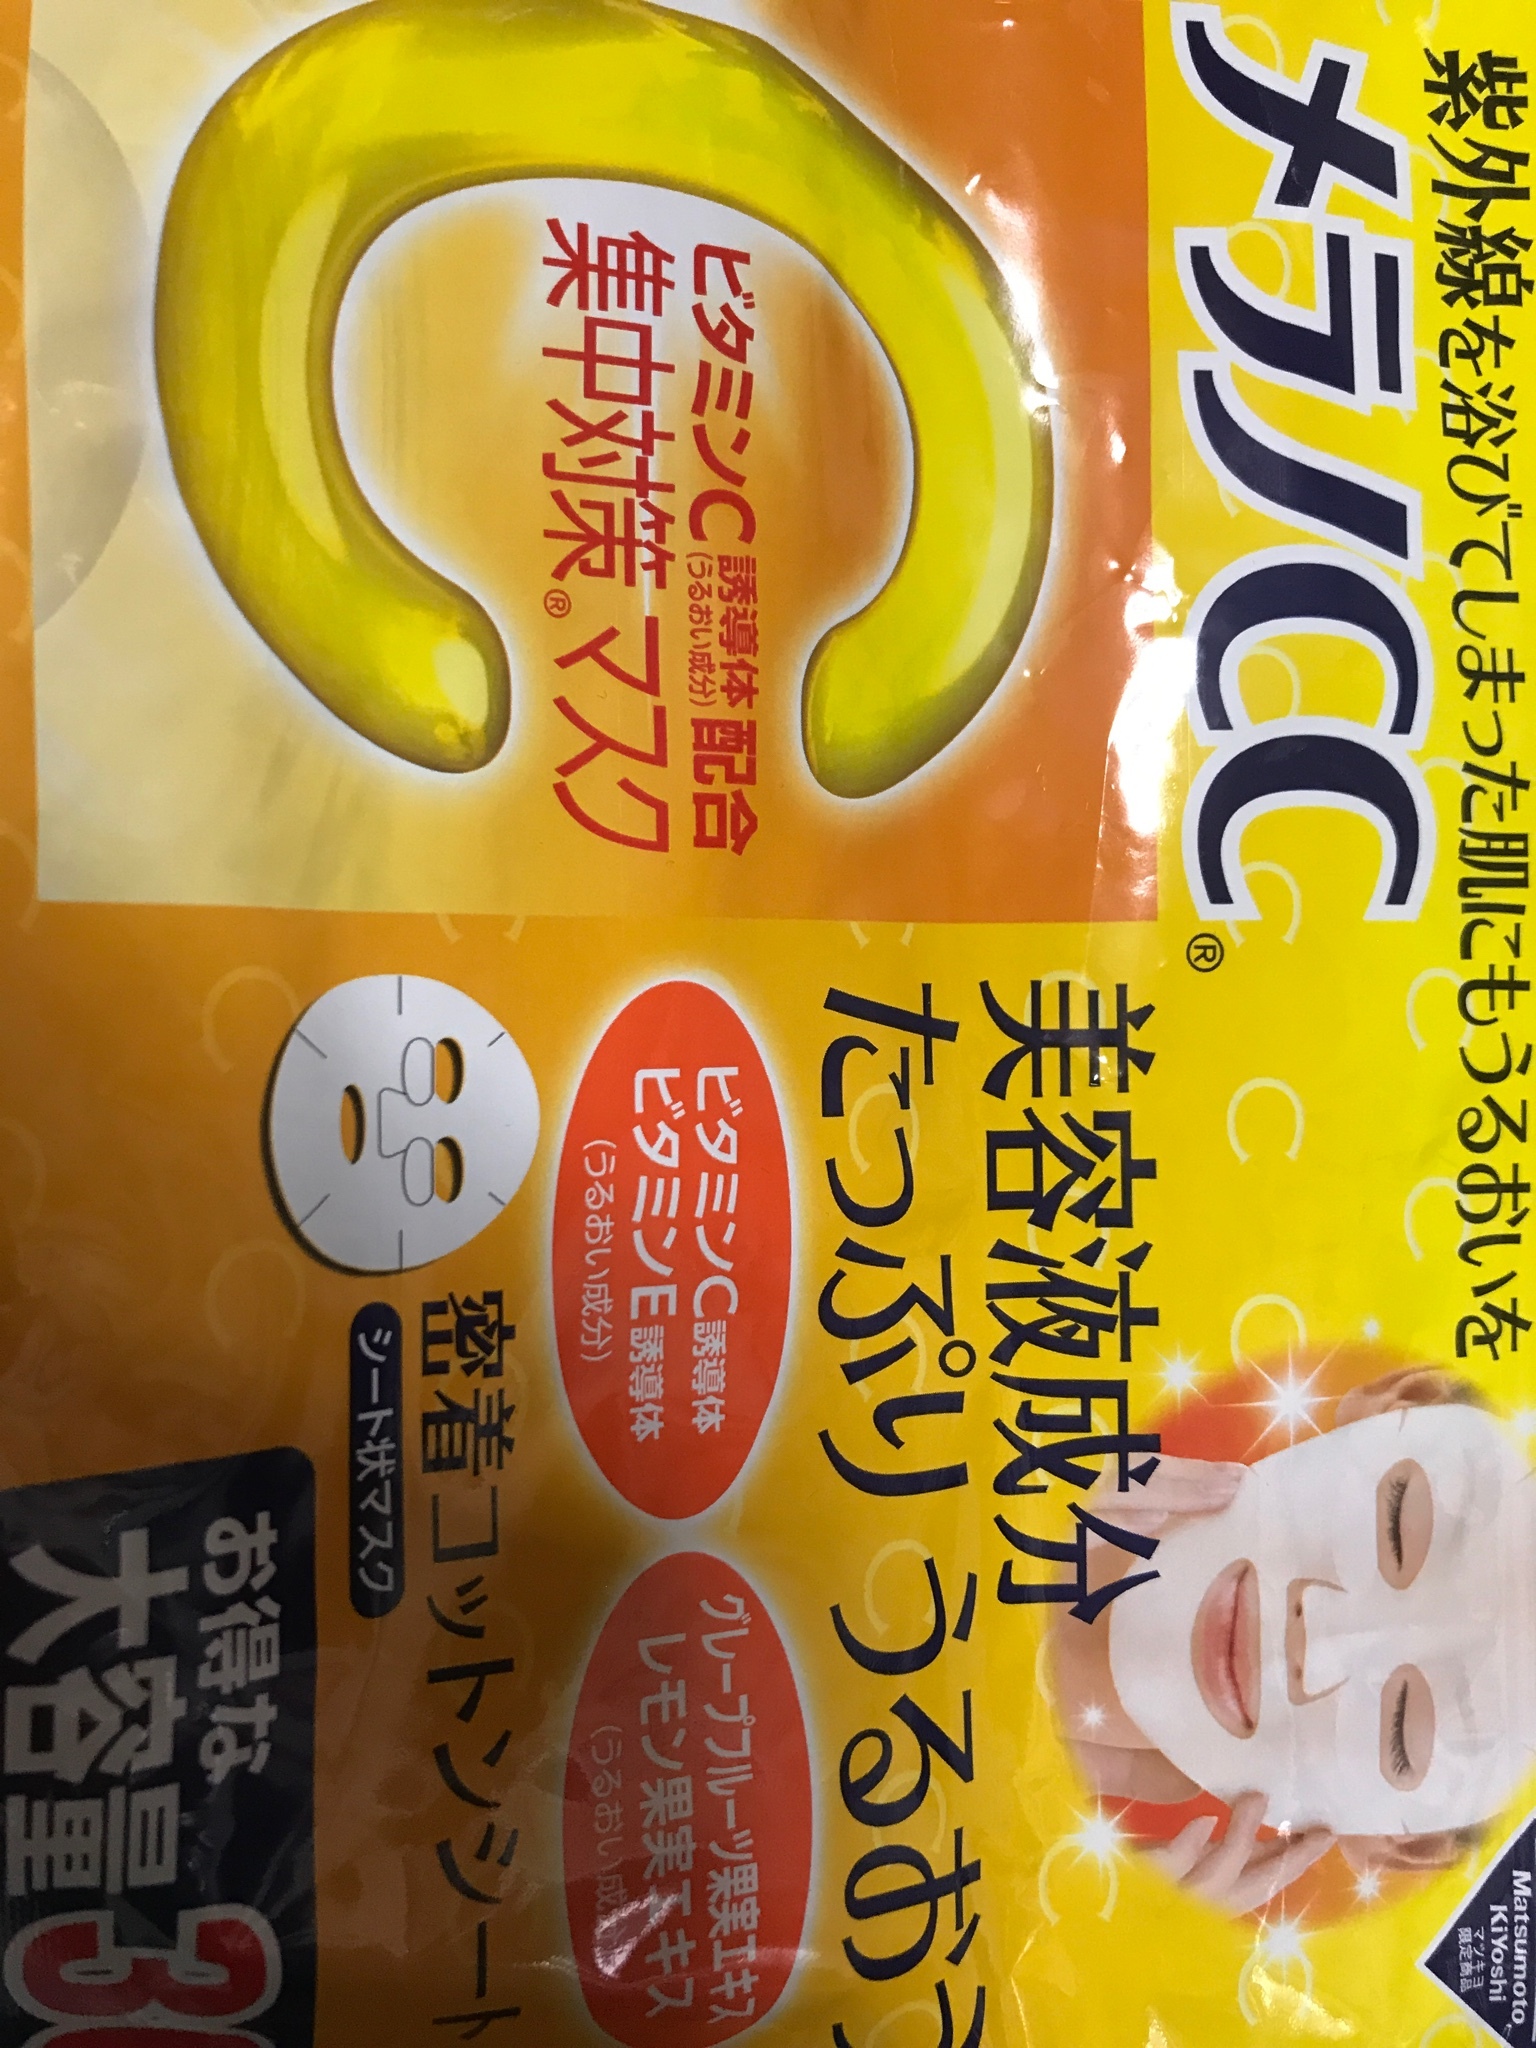 メラノcc 集中対策 マスクの口コミ写真 By デズニシーのキャラクター大好きマンさん 1枚目 美容 化粧品情報はアットコスメ